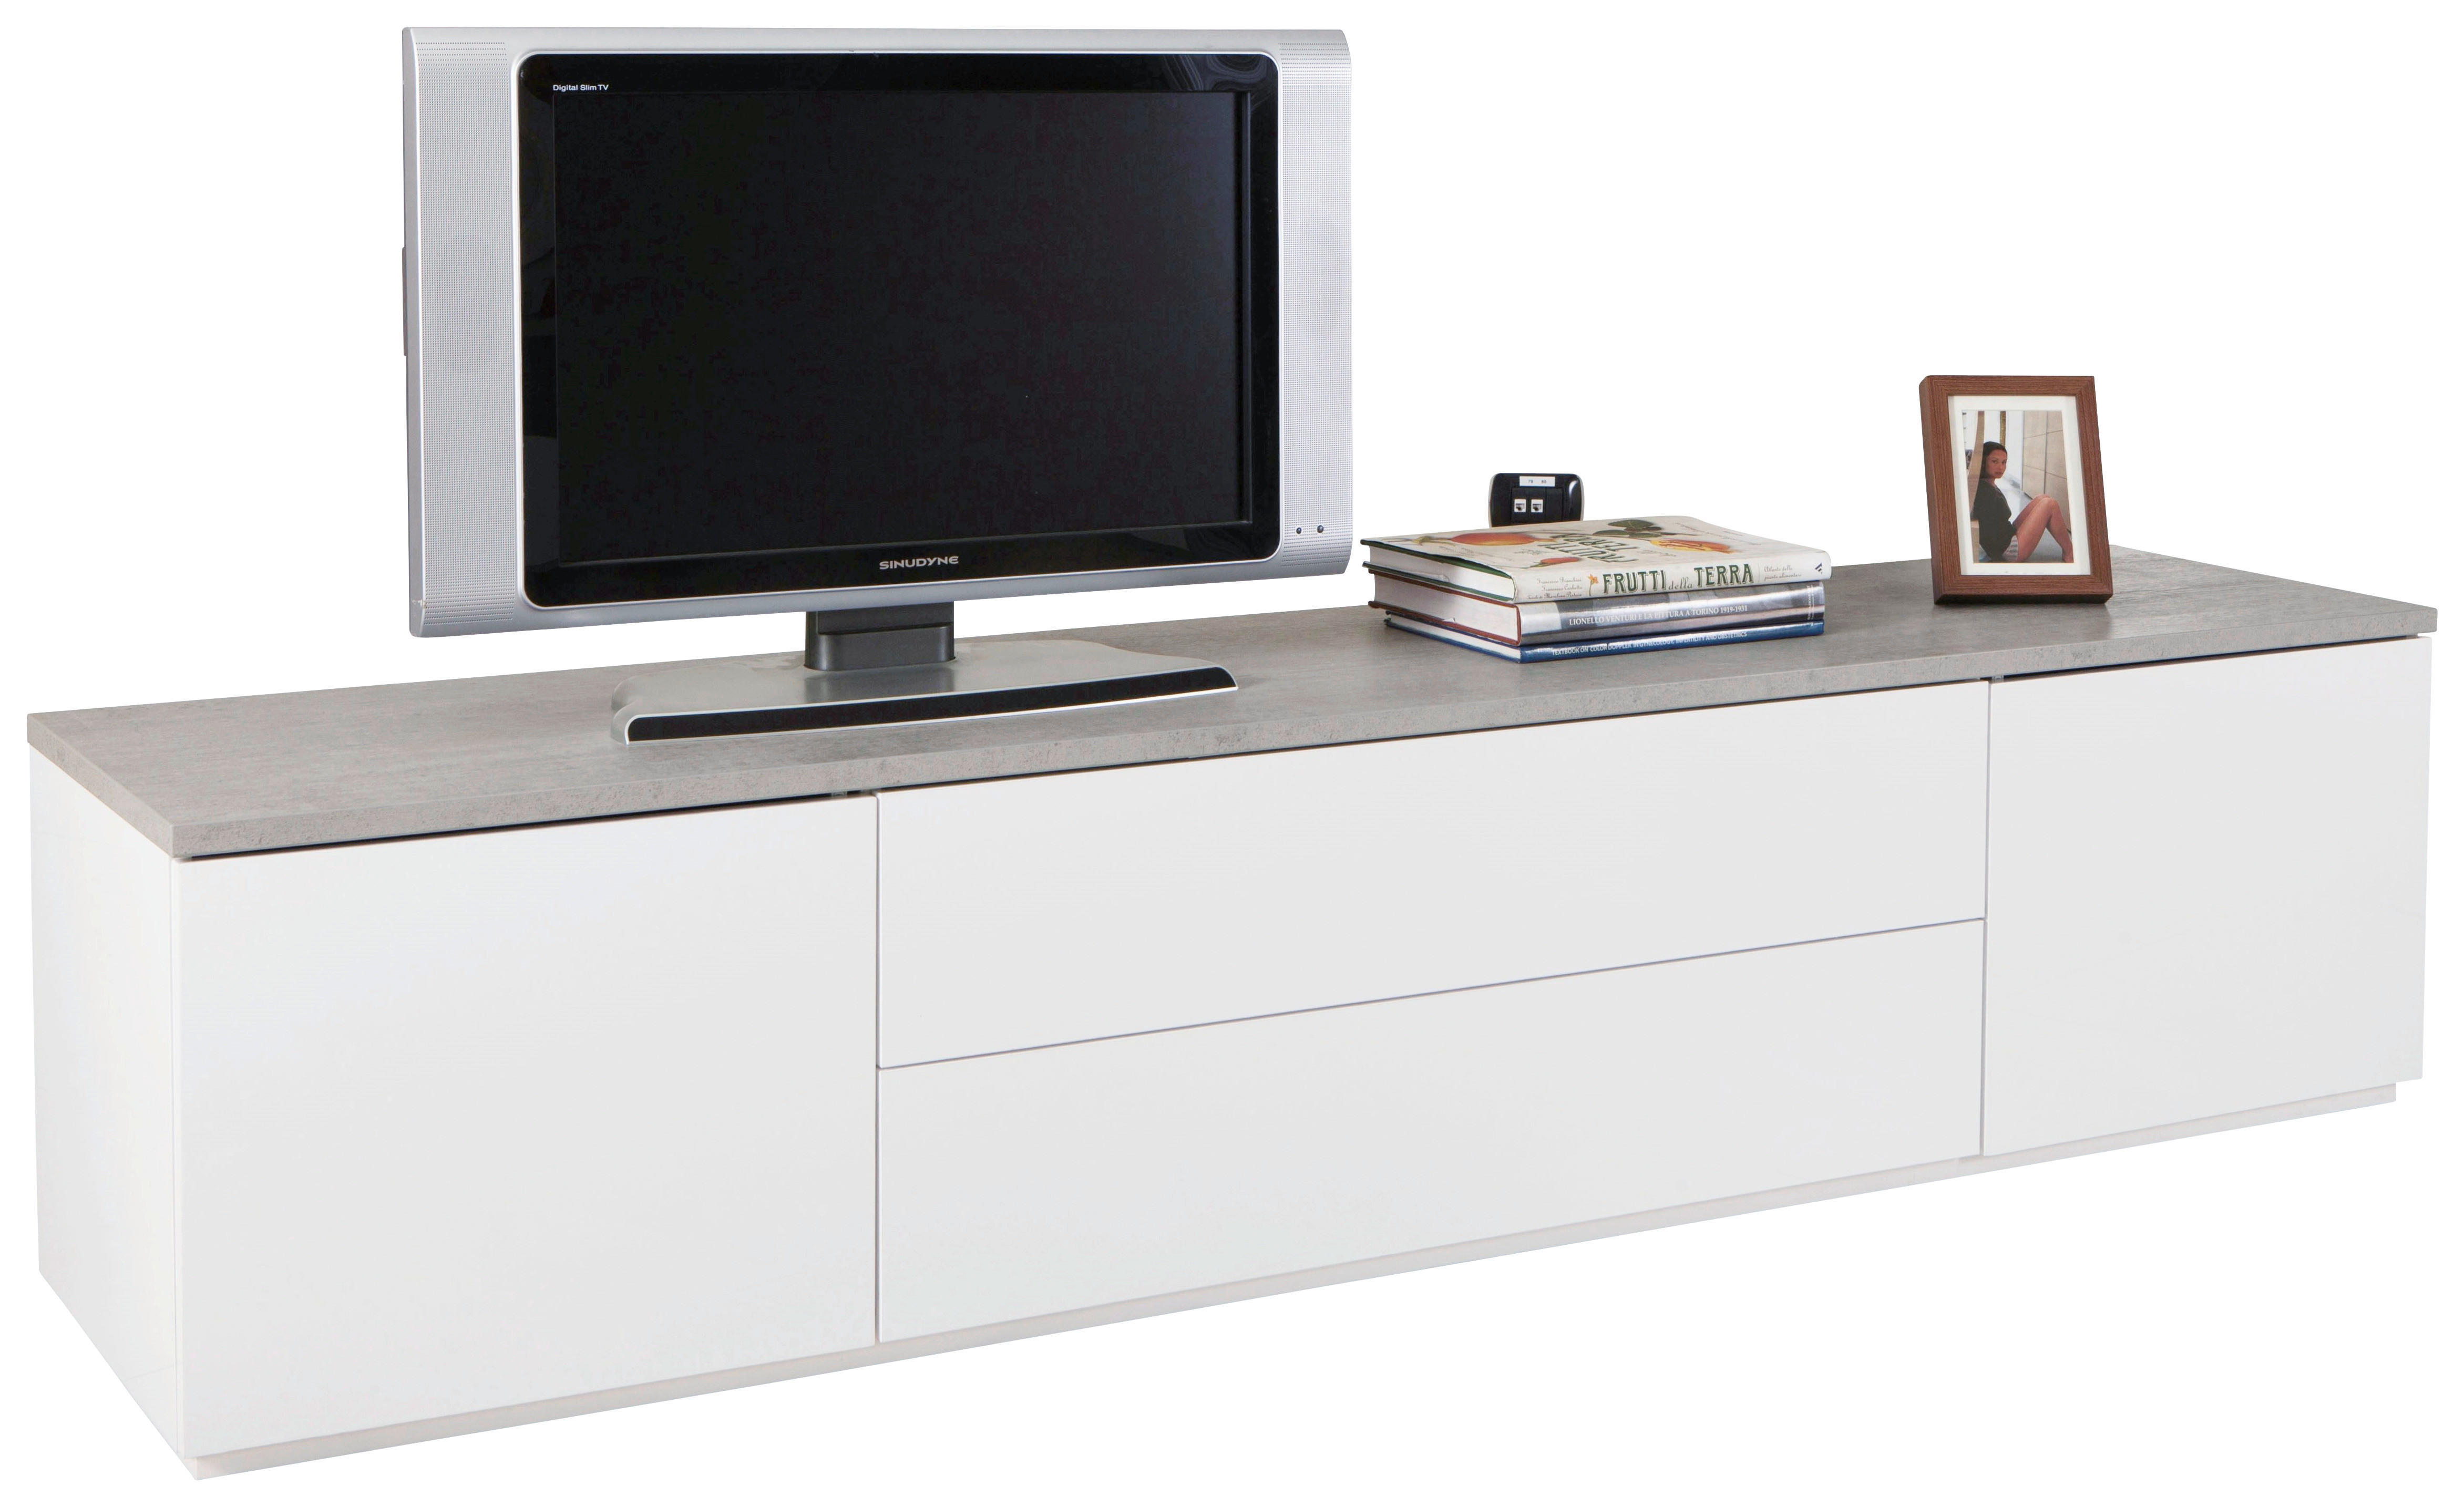 TV-BÄNK 200/45/45 cm  - vit/grå, Design, träbaserade material (200/45/45cm) - Carryhome